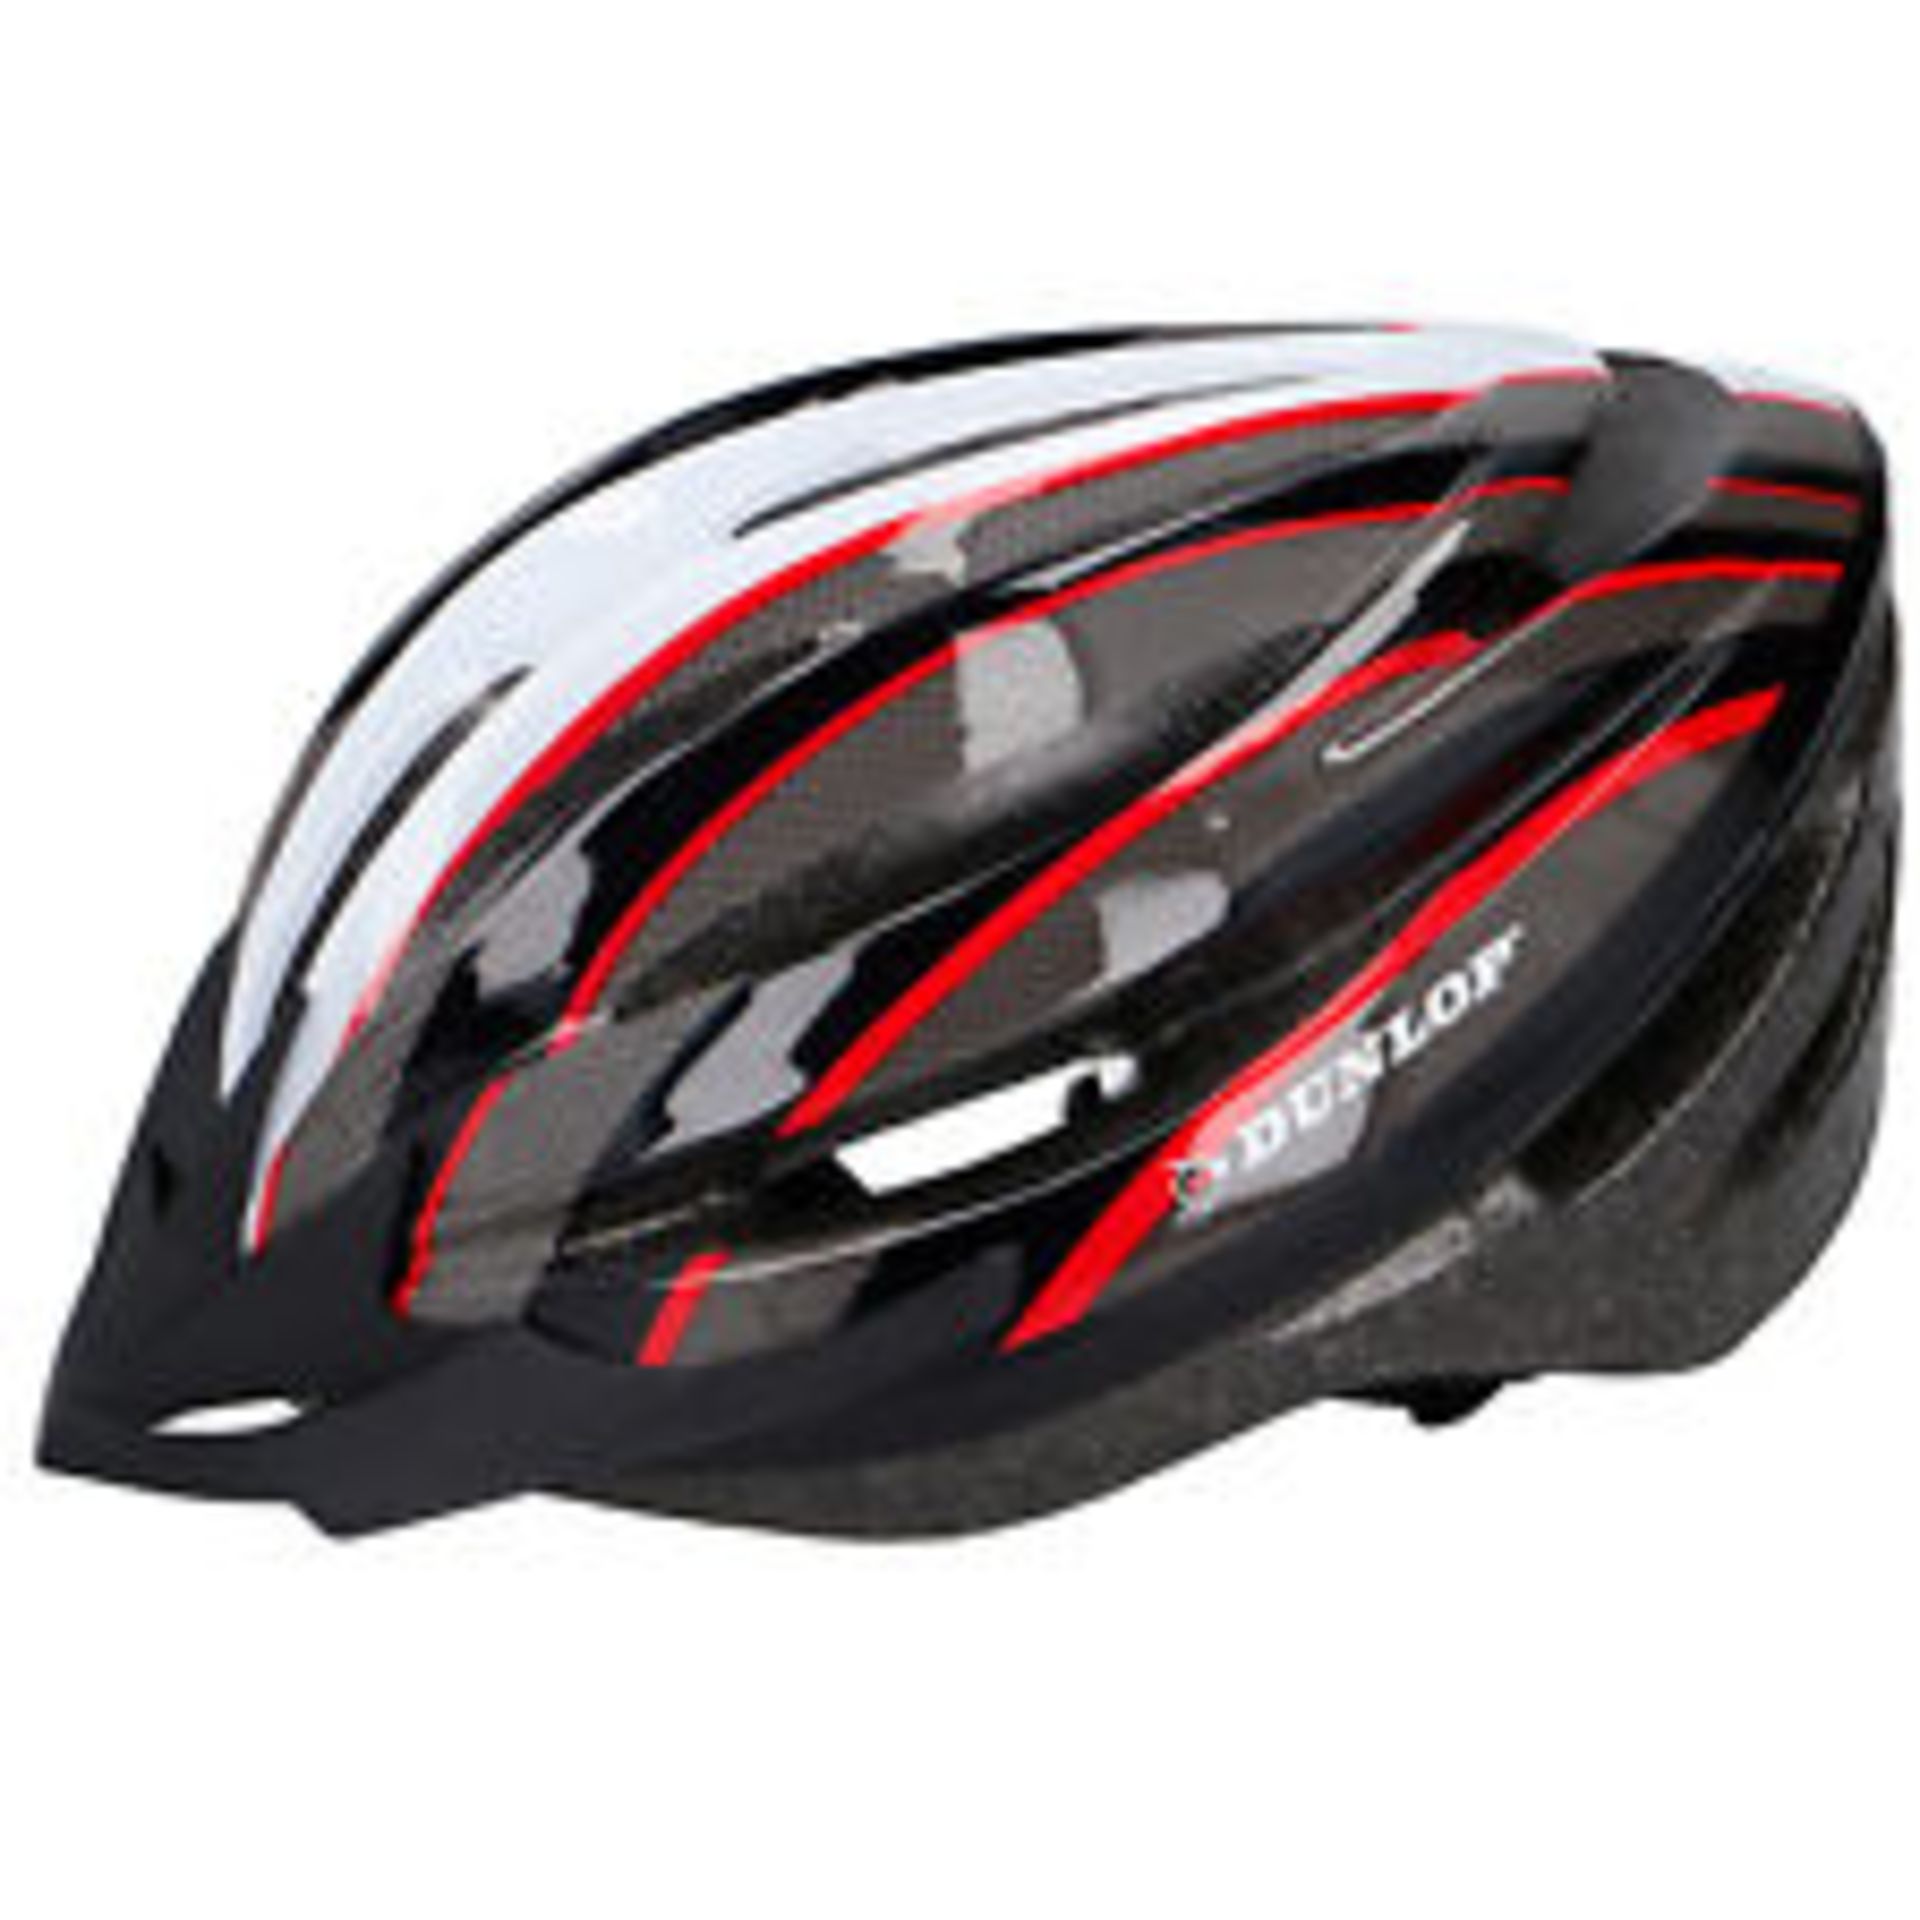 V Brand New Dunlop Bicycle Helmet Inc Lightweight & Removable Visor - Size L 58-61cm - Similar In